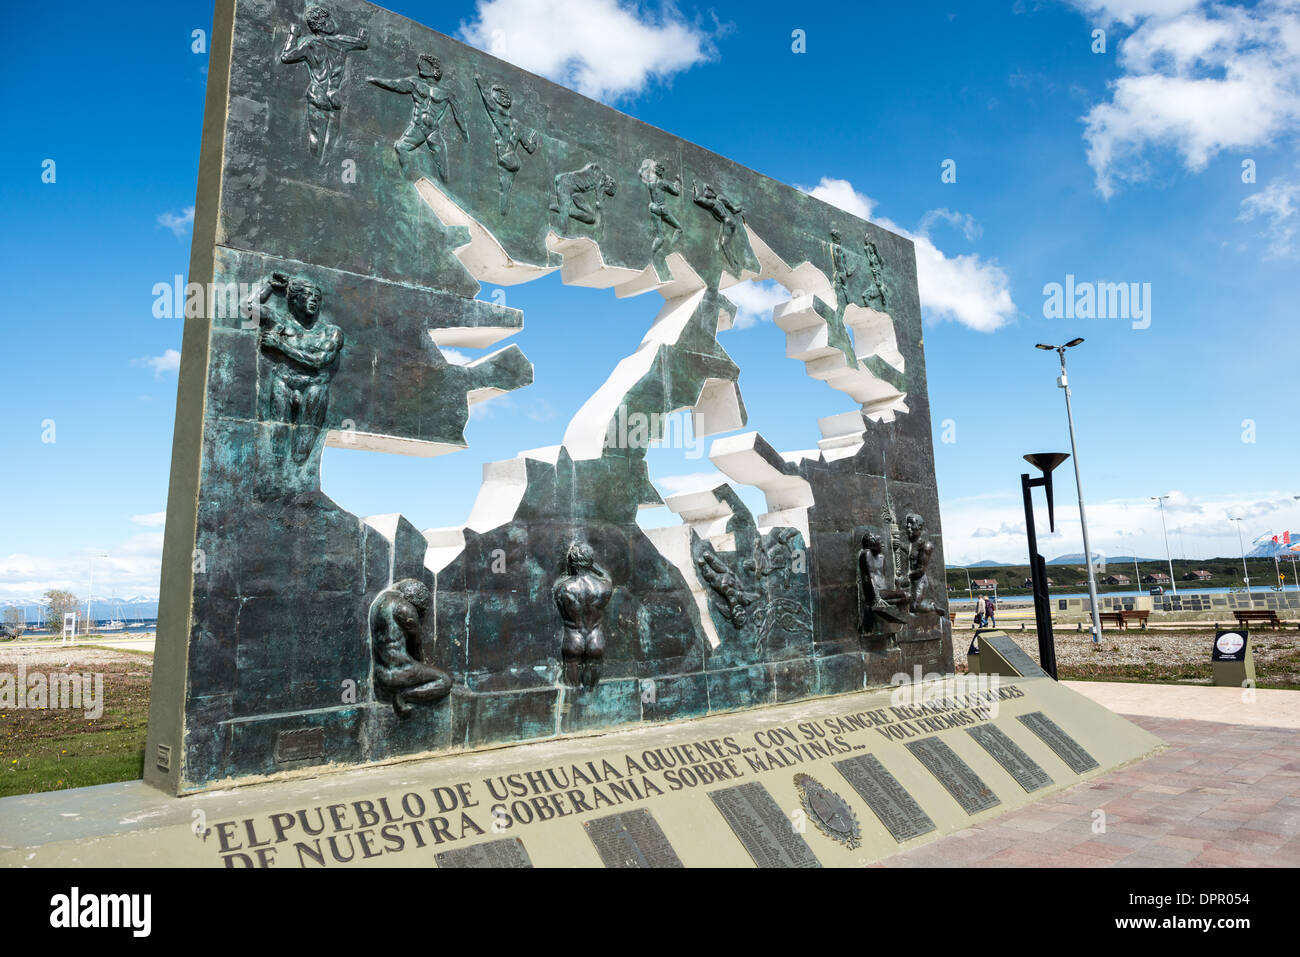 USHUAIA, Argentinien - ein Denkmal für die Falklandinseln Krieg (Guerra de las Malvinas in Argentinien bekannt) zwischen Großbritannien und Argentinien in Ushuaia. Stockfoto